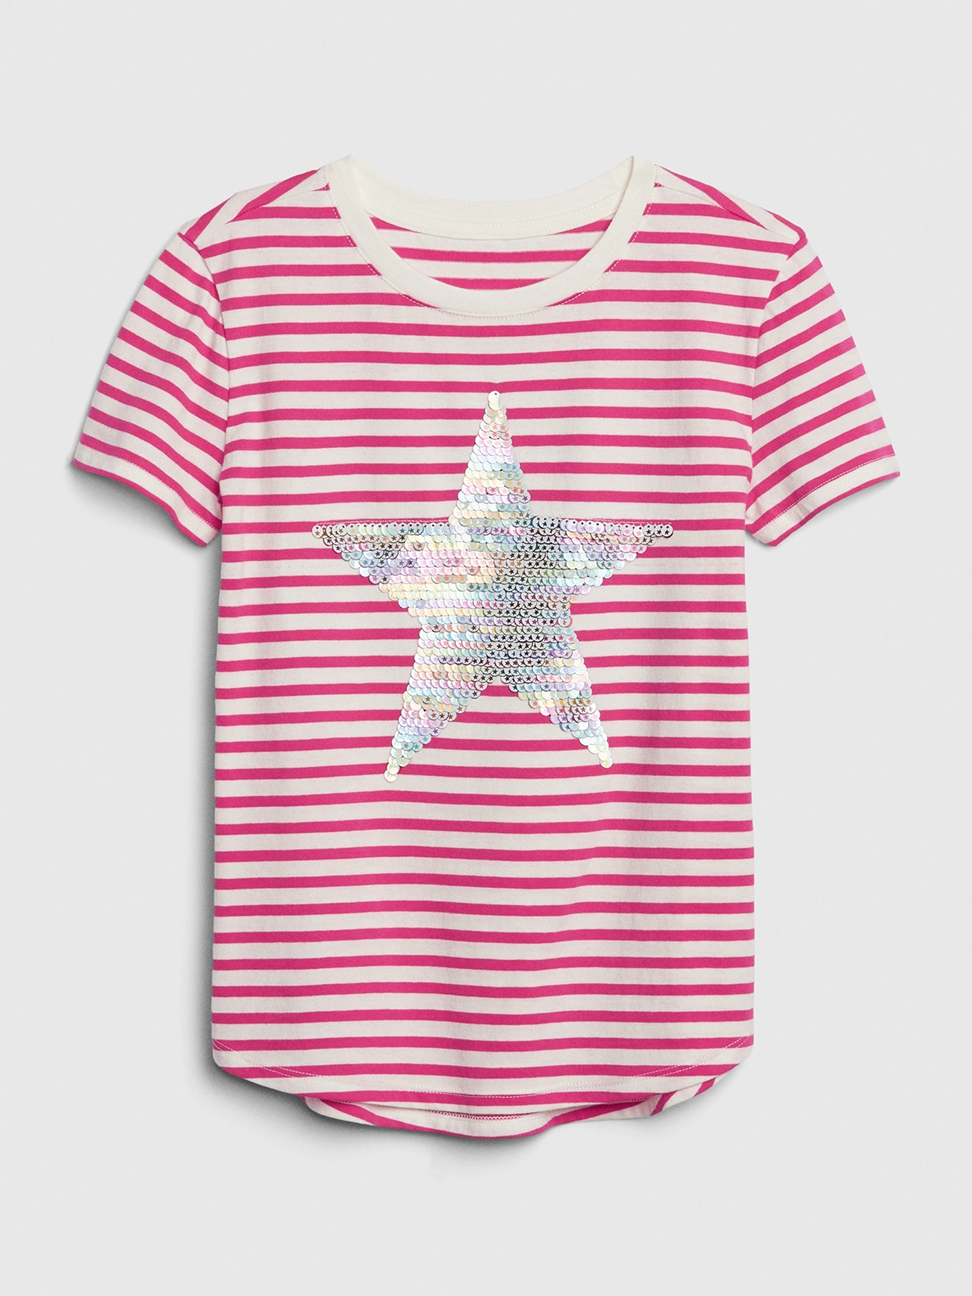 女童裝|棉質舒適圓領短袖T恤-粉色條紋